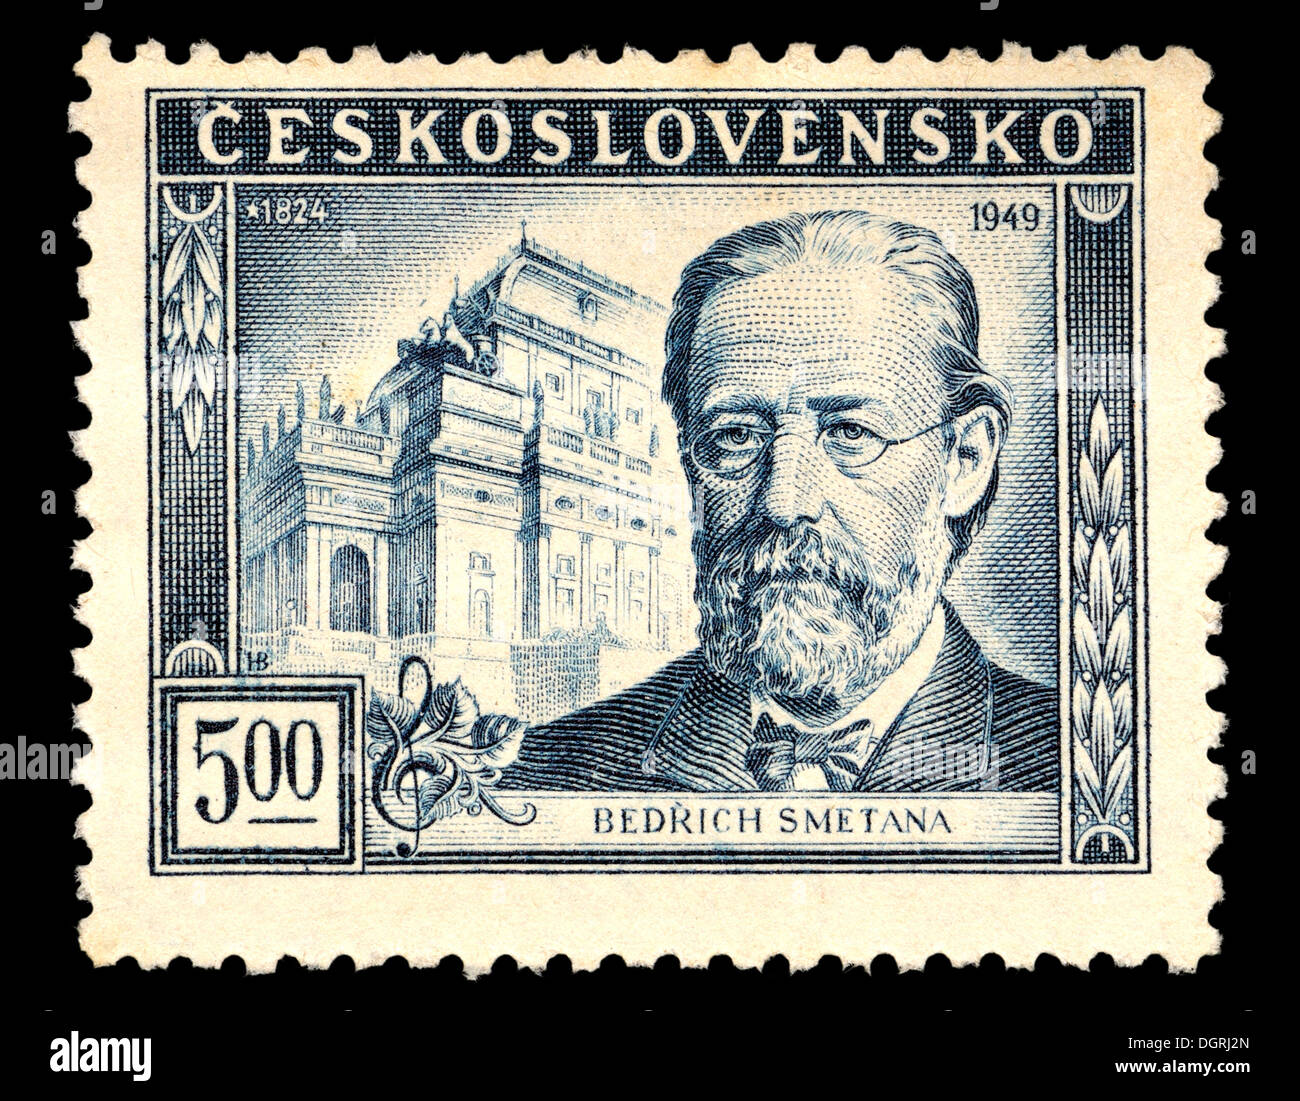 Briefmarke aus der Tschechoslowakei - tschechischen Komponisten Bedrich Smetana (1824-84), vor dem Nationaltheater Prag Stockfoto